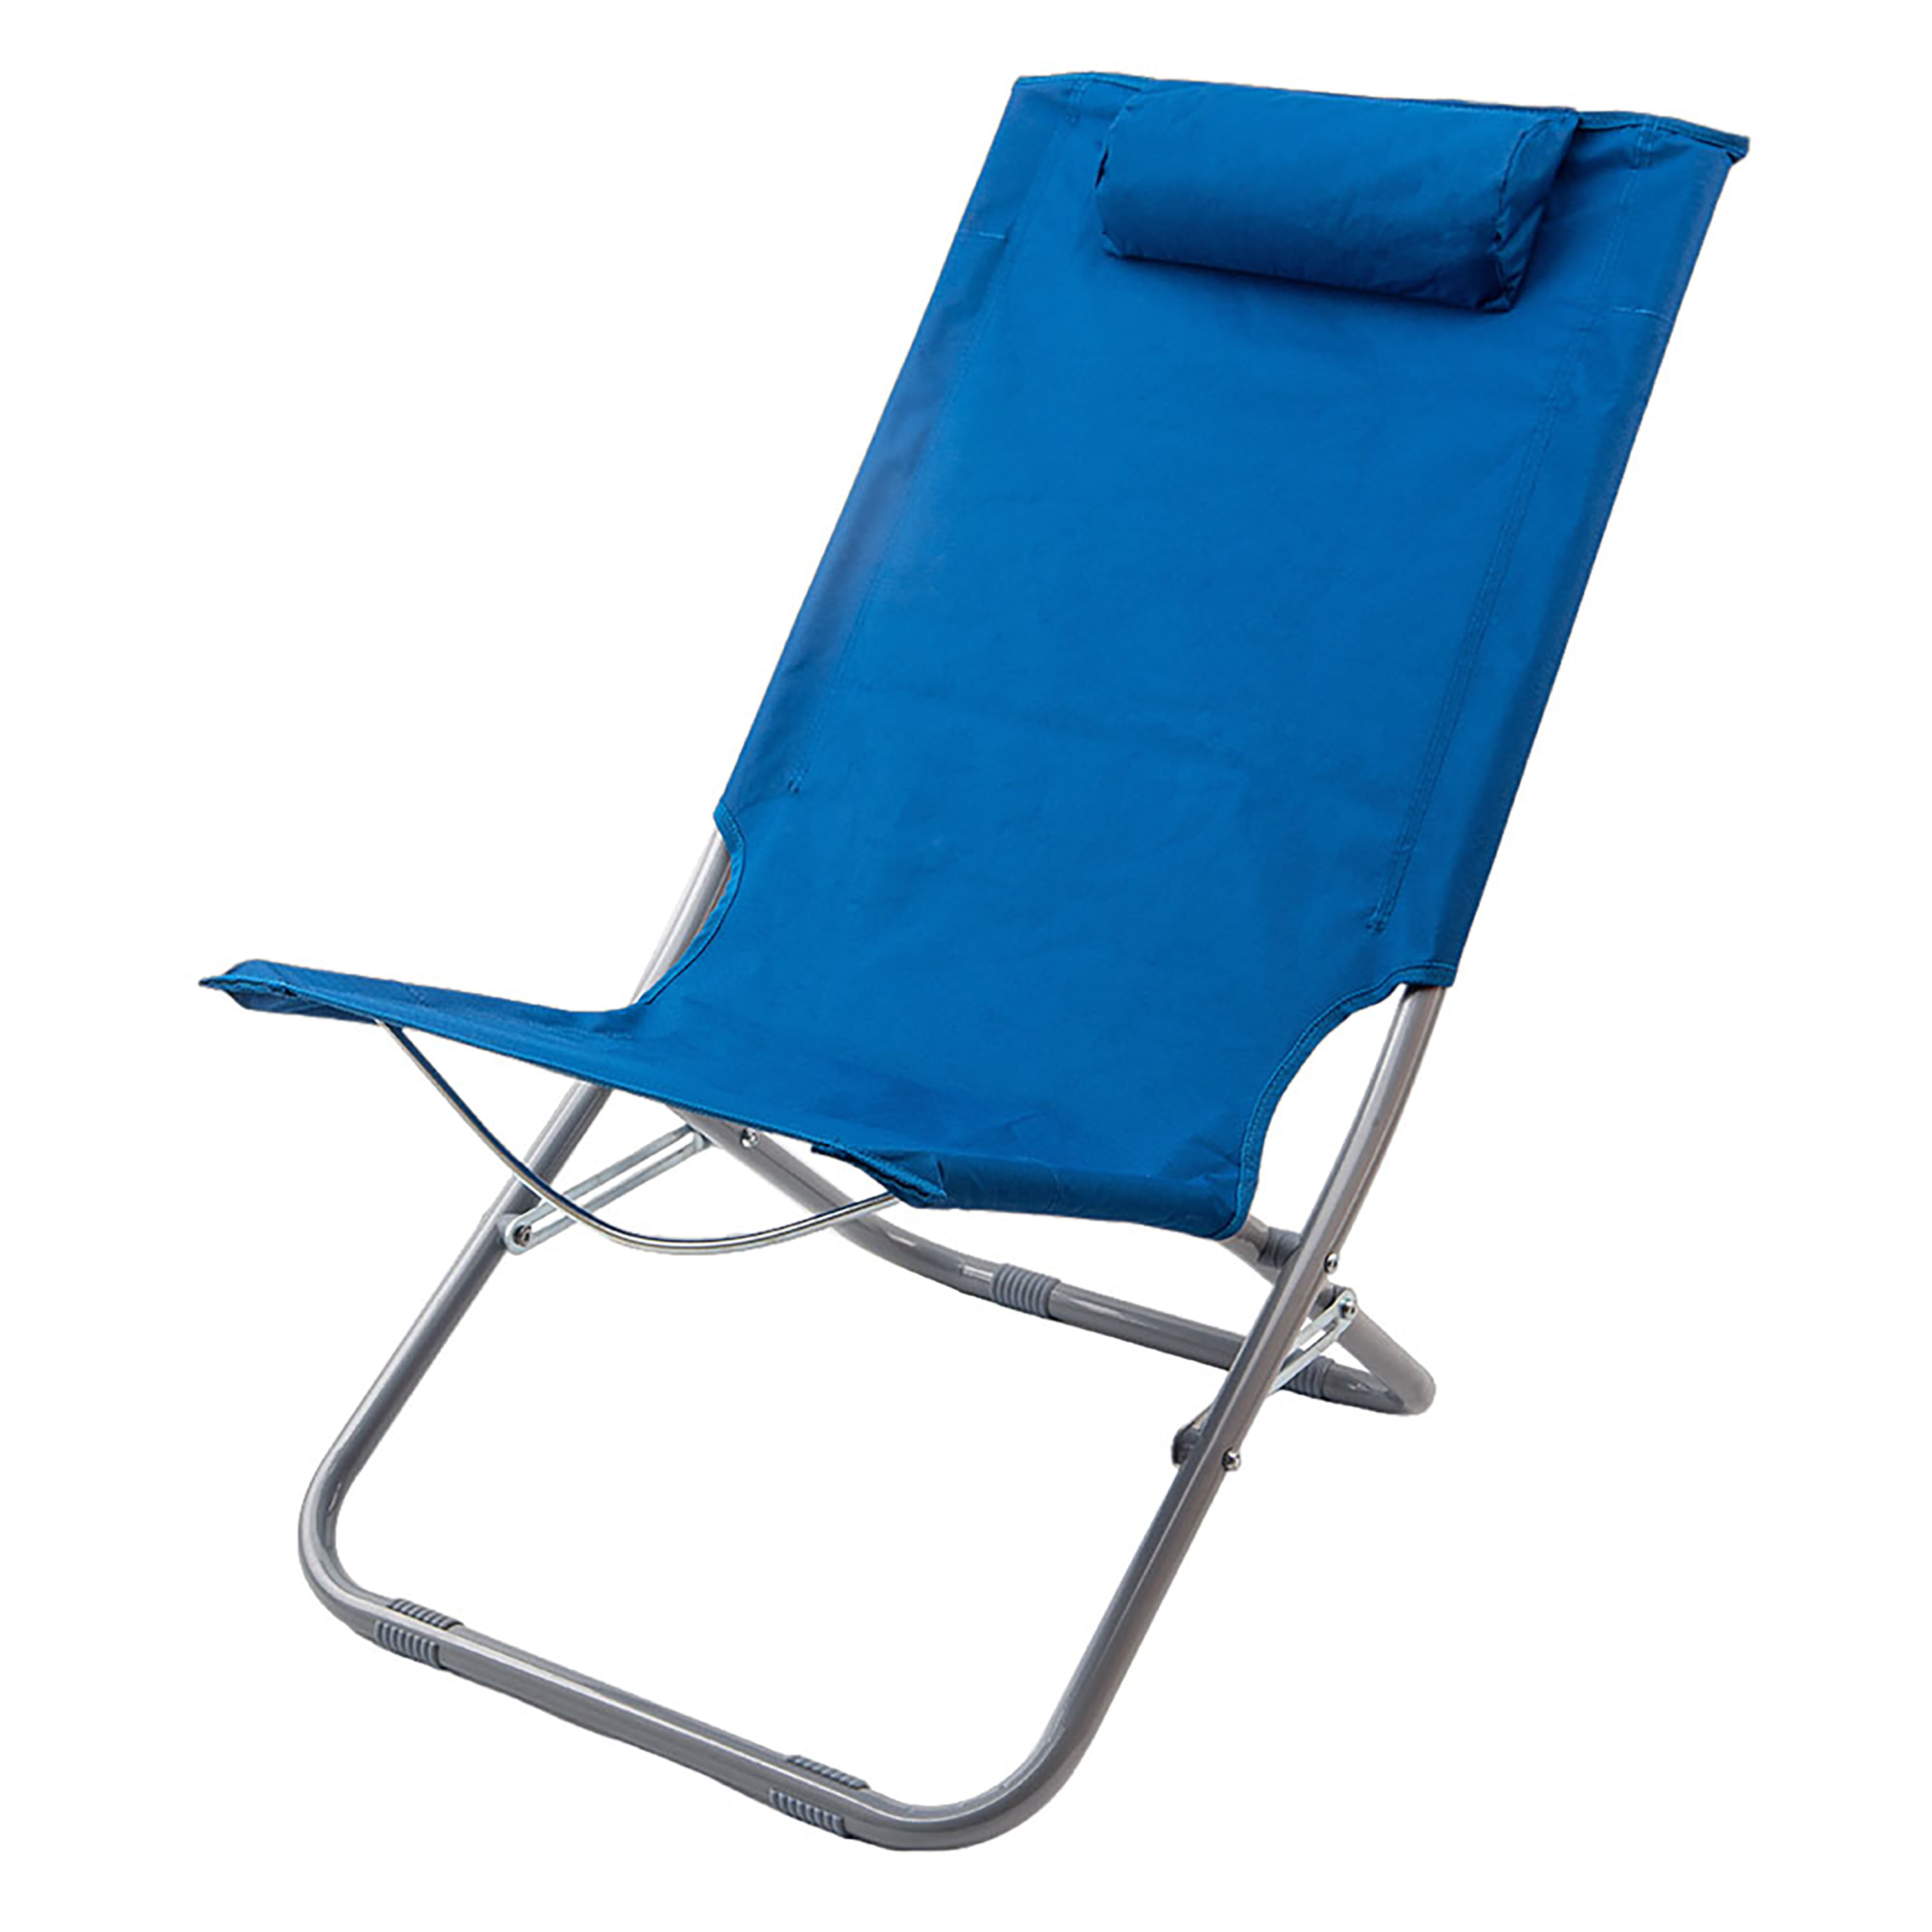 Tipos de sillas de playa - Tienda de Productos de Playa - Brico Rondón